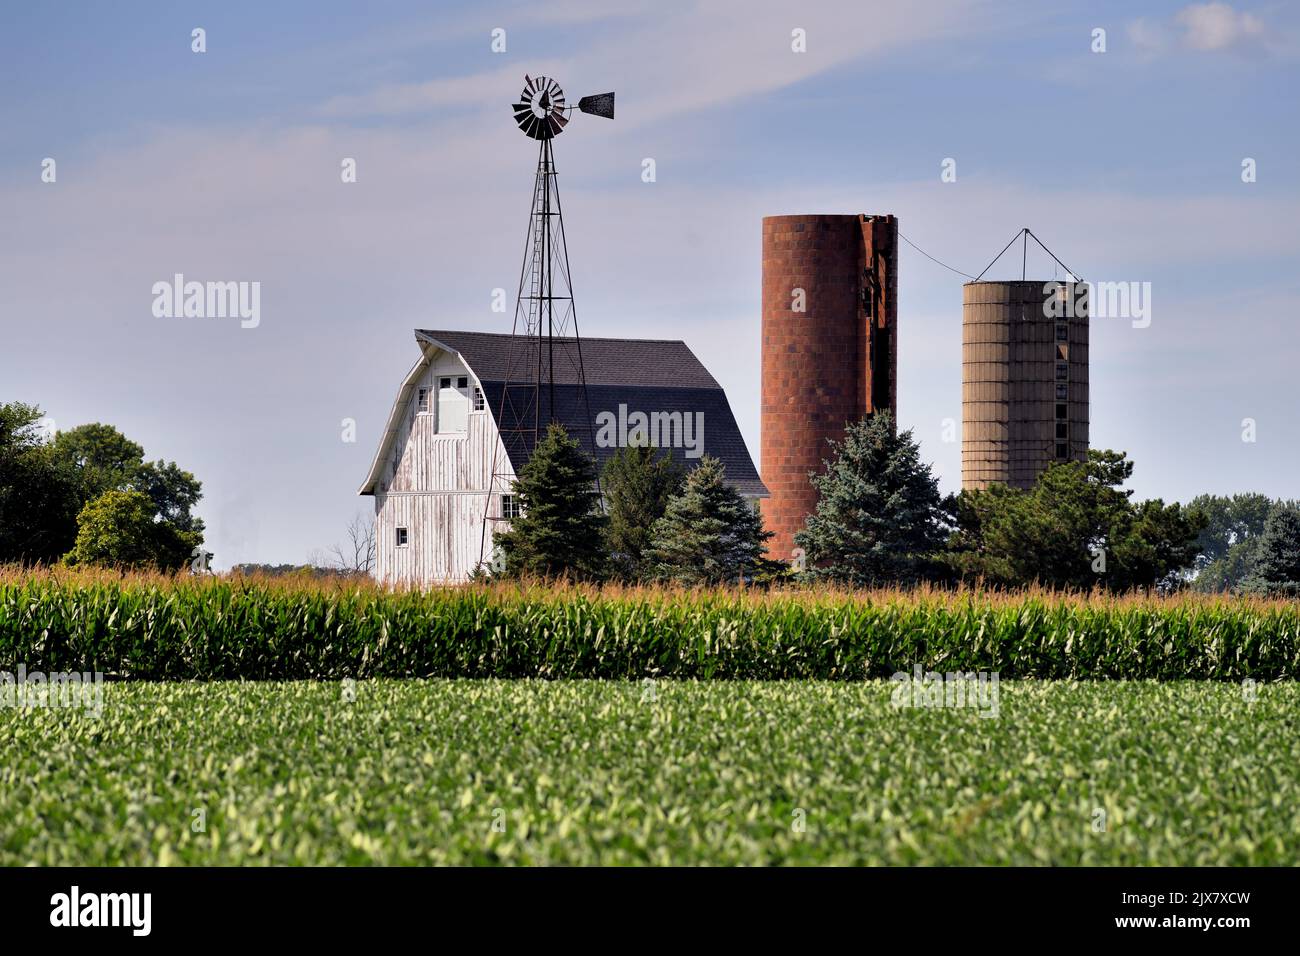 Maple Park, Illinois, États-Unis. Une grange d'époque, un moulin à vent et de vieux silos sans bouchon entourés de cultures de maïs matures dans un champ de maïs dans le nord-est de l'Illinois. Banque D'Images